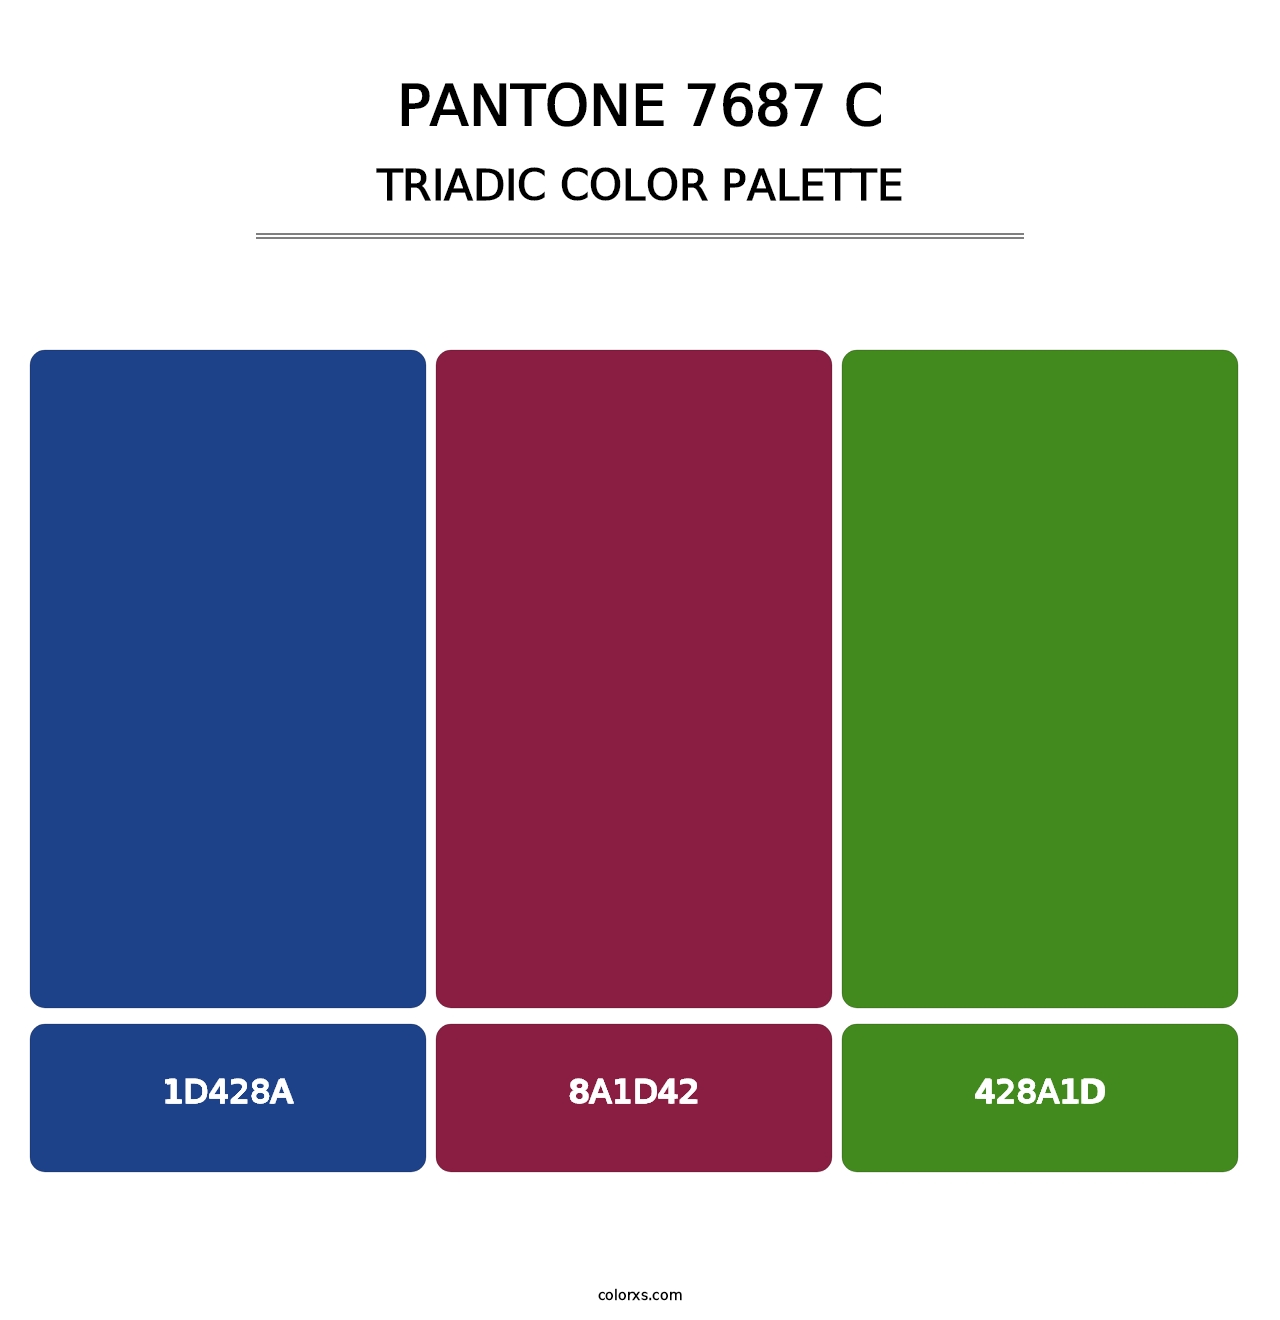 PANTONE 7687 C - Triadic Color Palette